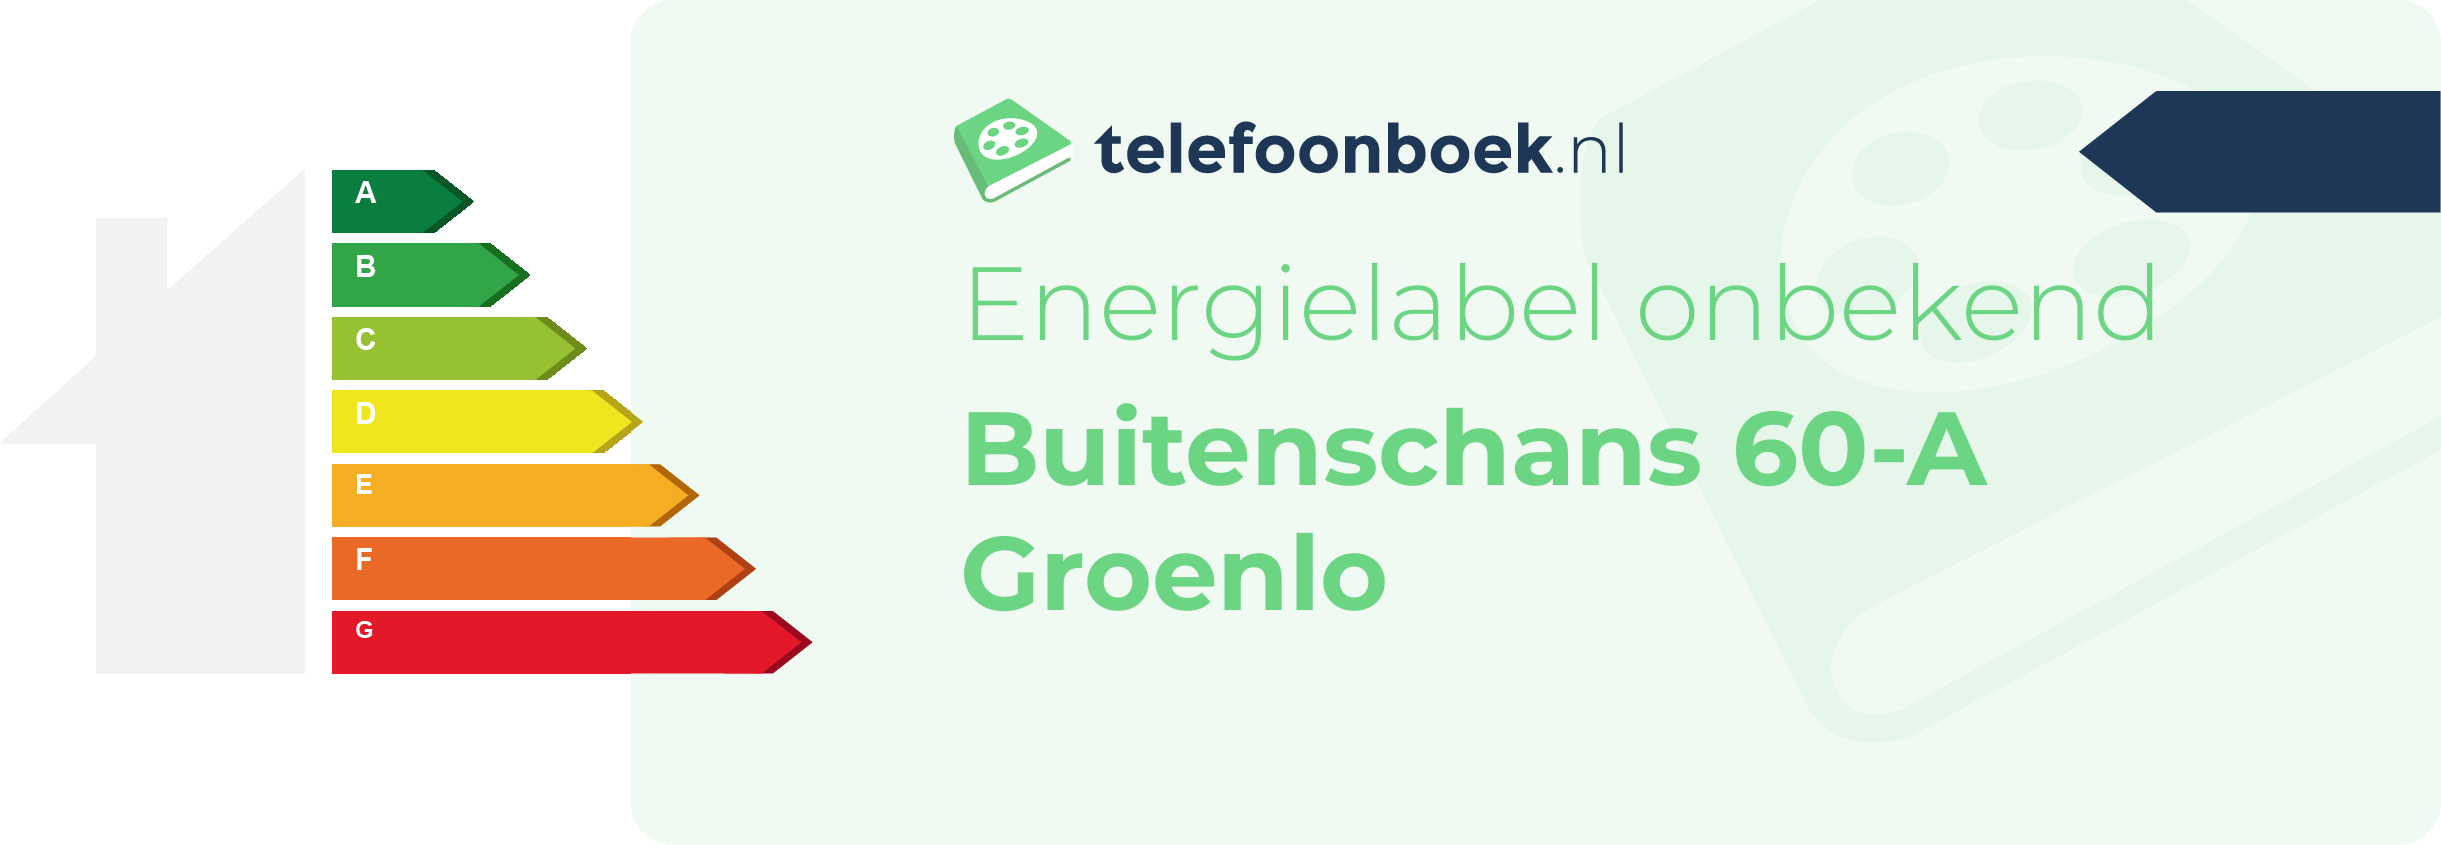 Energielabel Buitenschans 60-A Groenlo